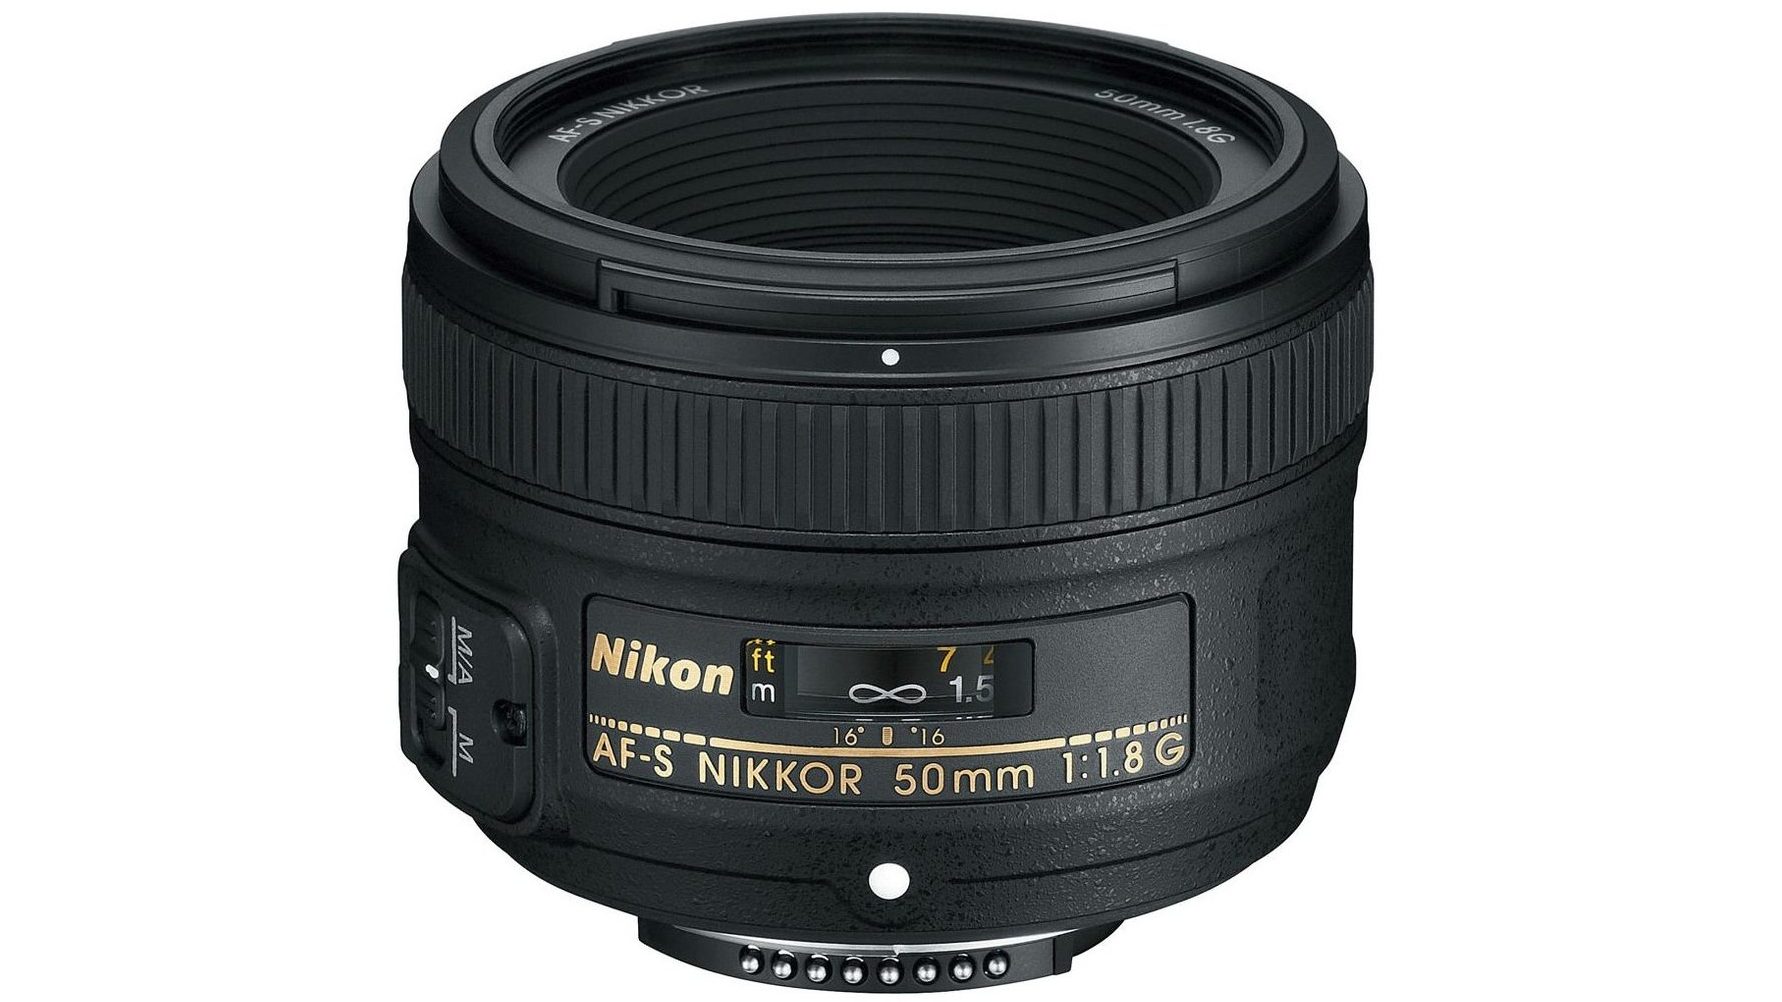 Nikon lens AF S FX Nikkor 50mm f1.8G - The best dslr lenses